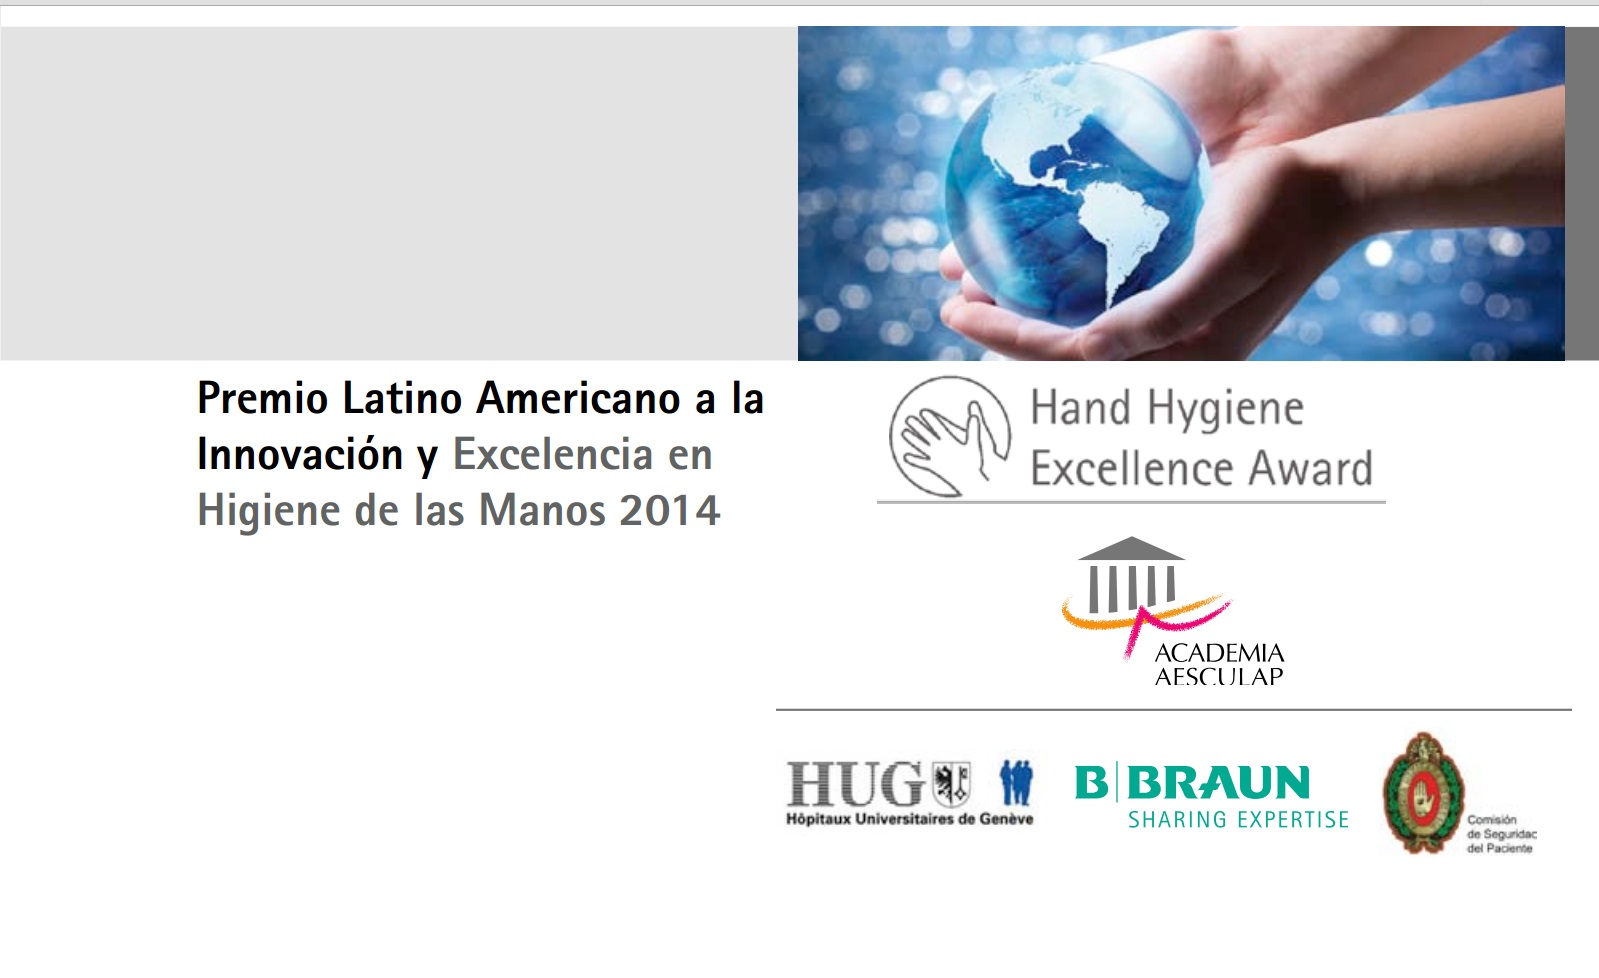 Ilustración del Premio Latinoamericano a la Innovación y Excelencia en Higiene de las Manos 2014